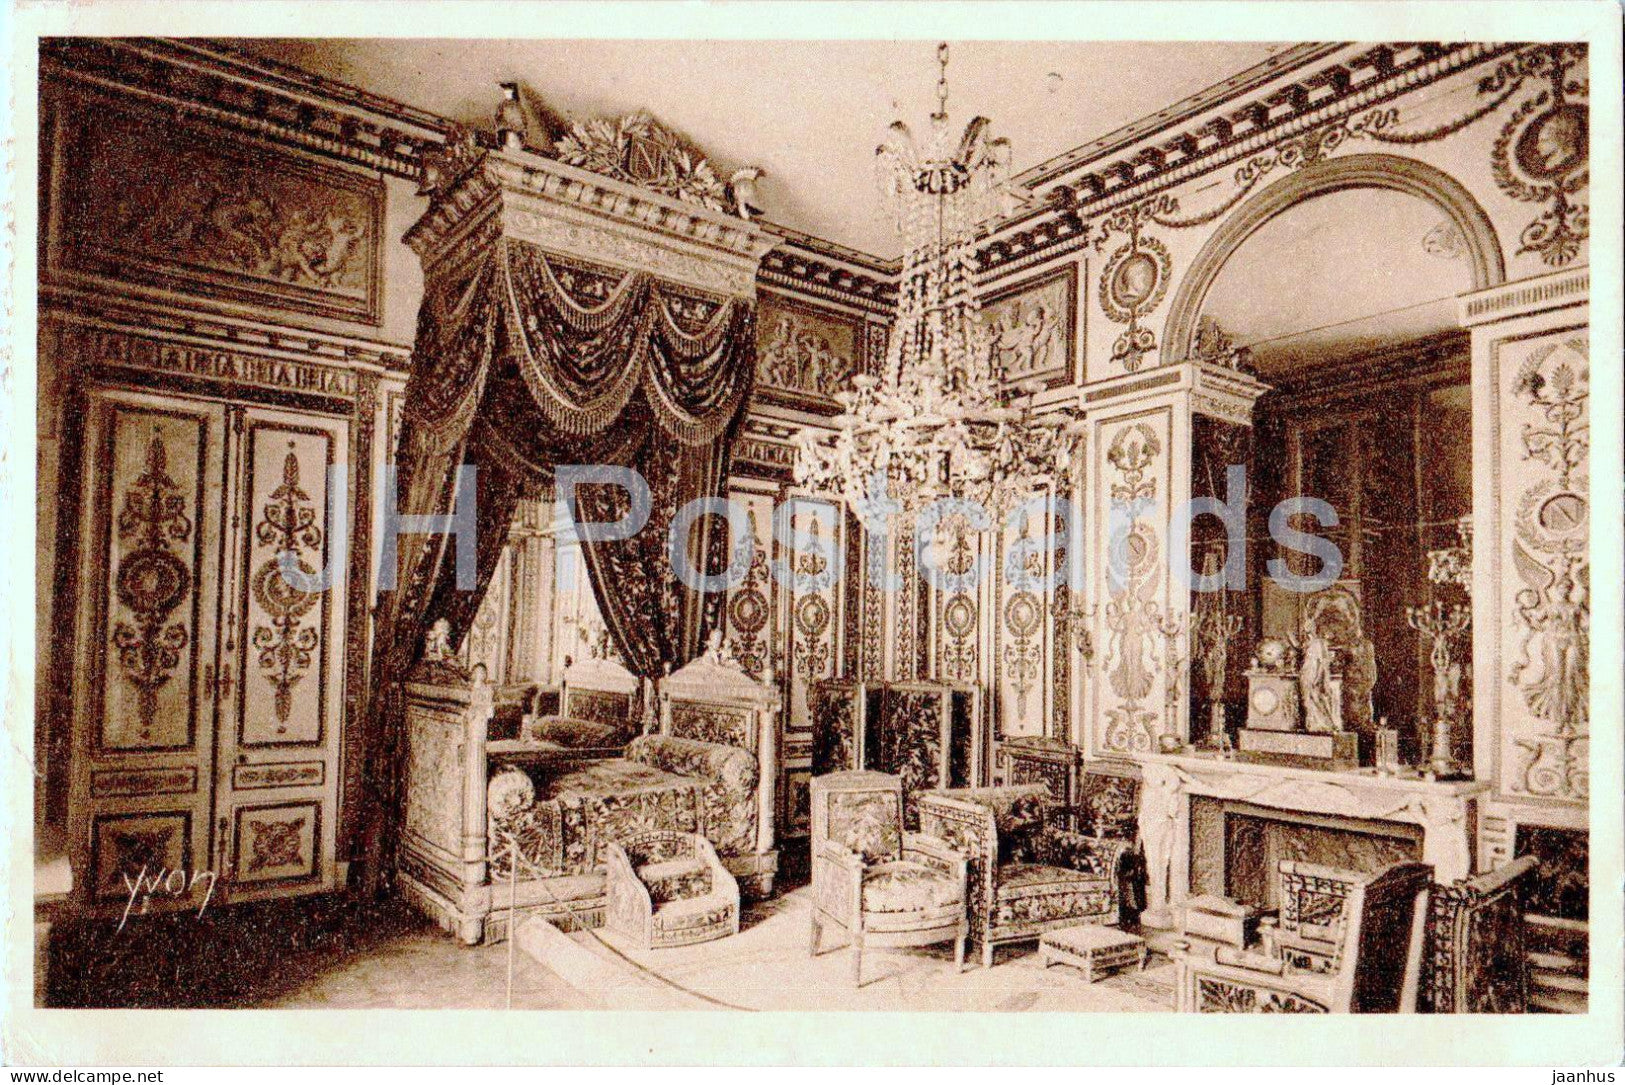 Palais de Fontainebleau - Chambre a coucher Napoleon - 12 - old postcard - 1931 - France - used - JH Postcards